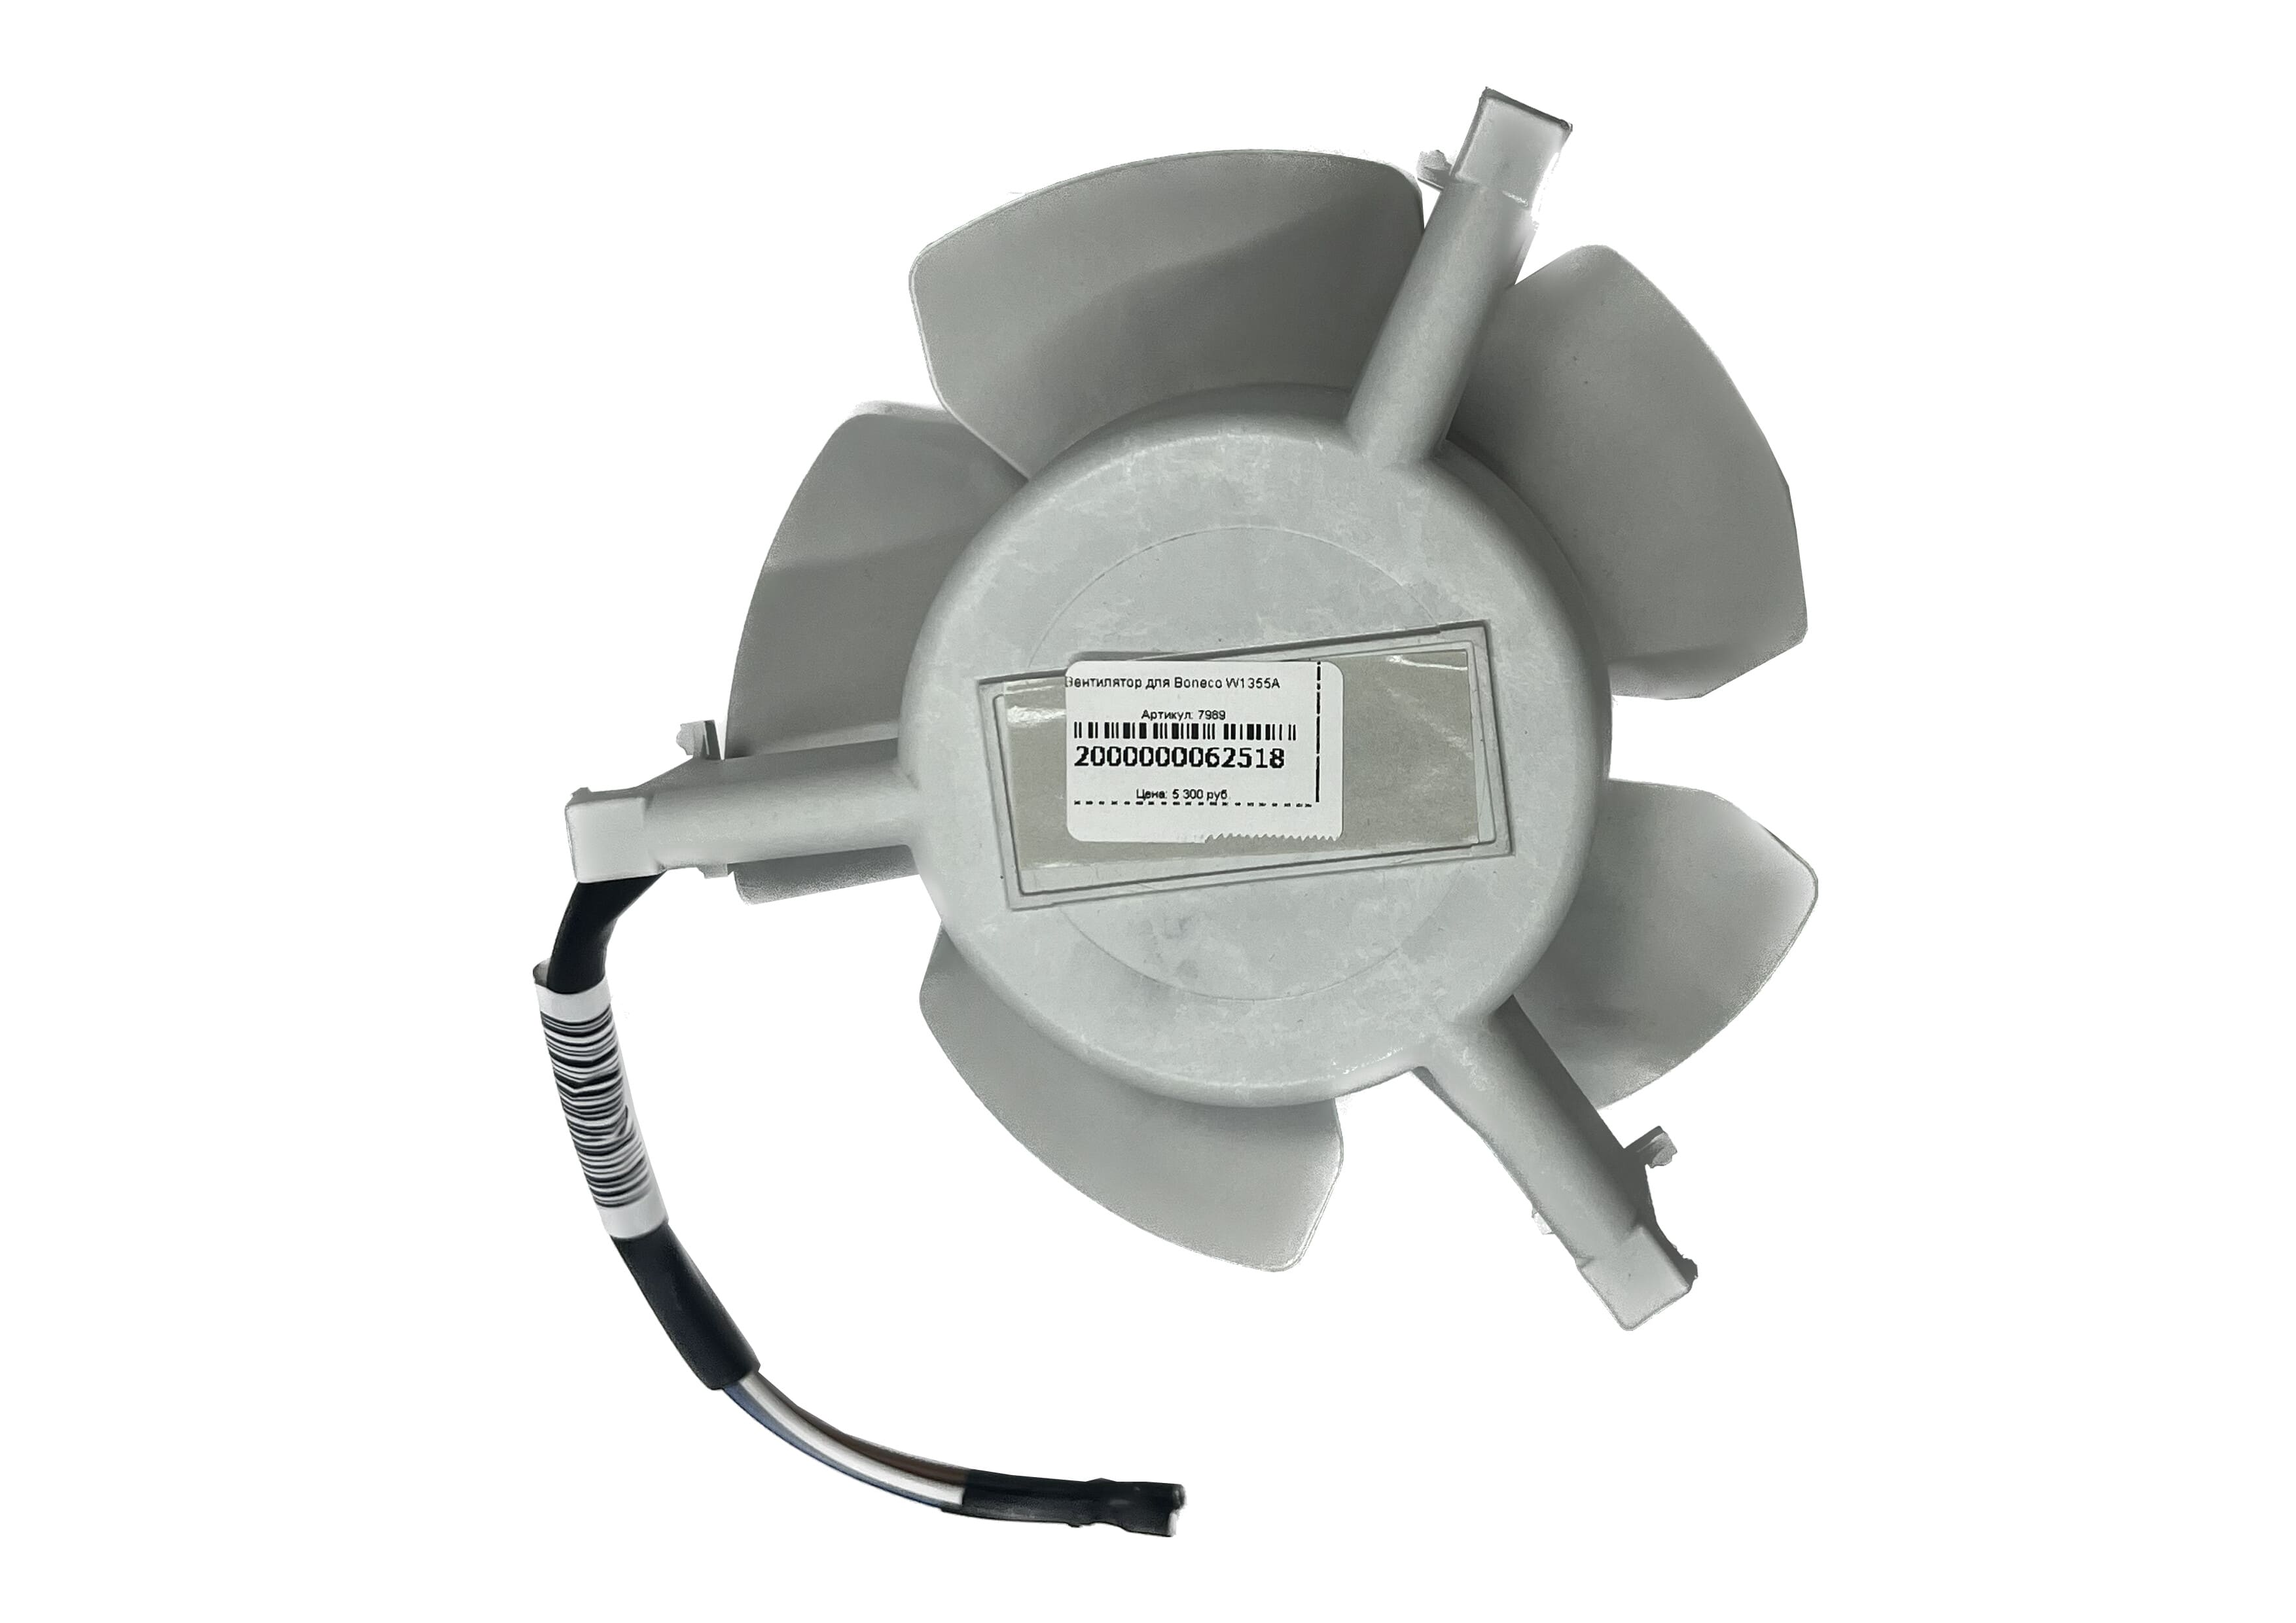 Мотор вентилятора для 1355 в сборе Electrolux EHAW - 6525 (terracotta) по выгодной цене фото3